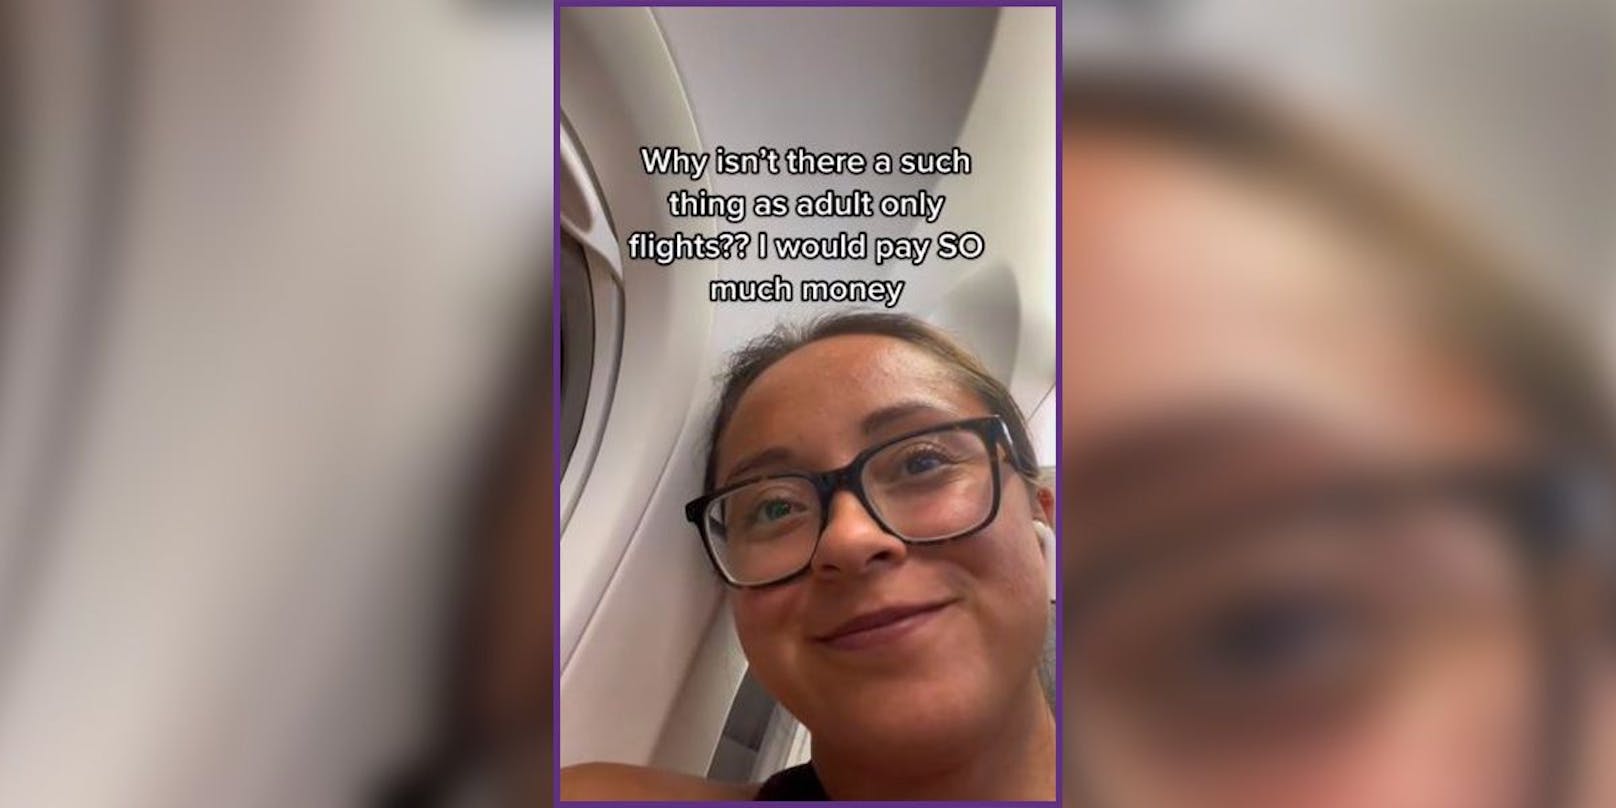 "Warum gibt es nicht so etwas wie Flüge nur für Erwachsene? Ich würde so viel Geld [dafür] bezahlen", untertitelt die junge Frau ihr Video, das inzwischen über 800.000 Mal angesehen wurde.